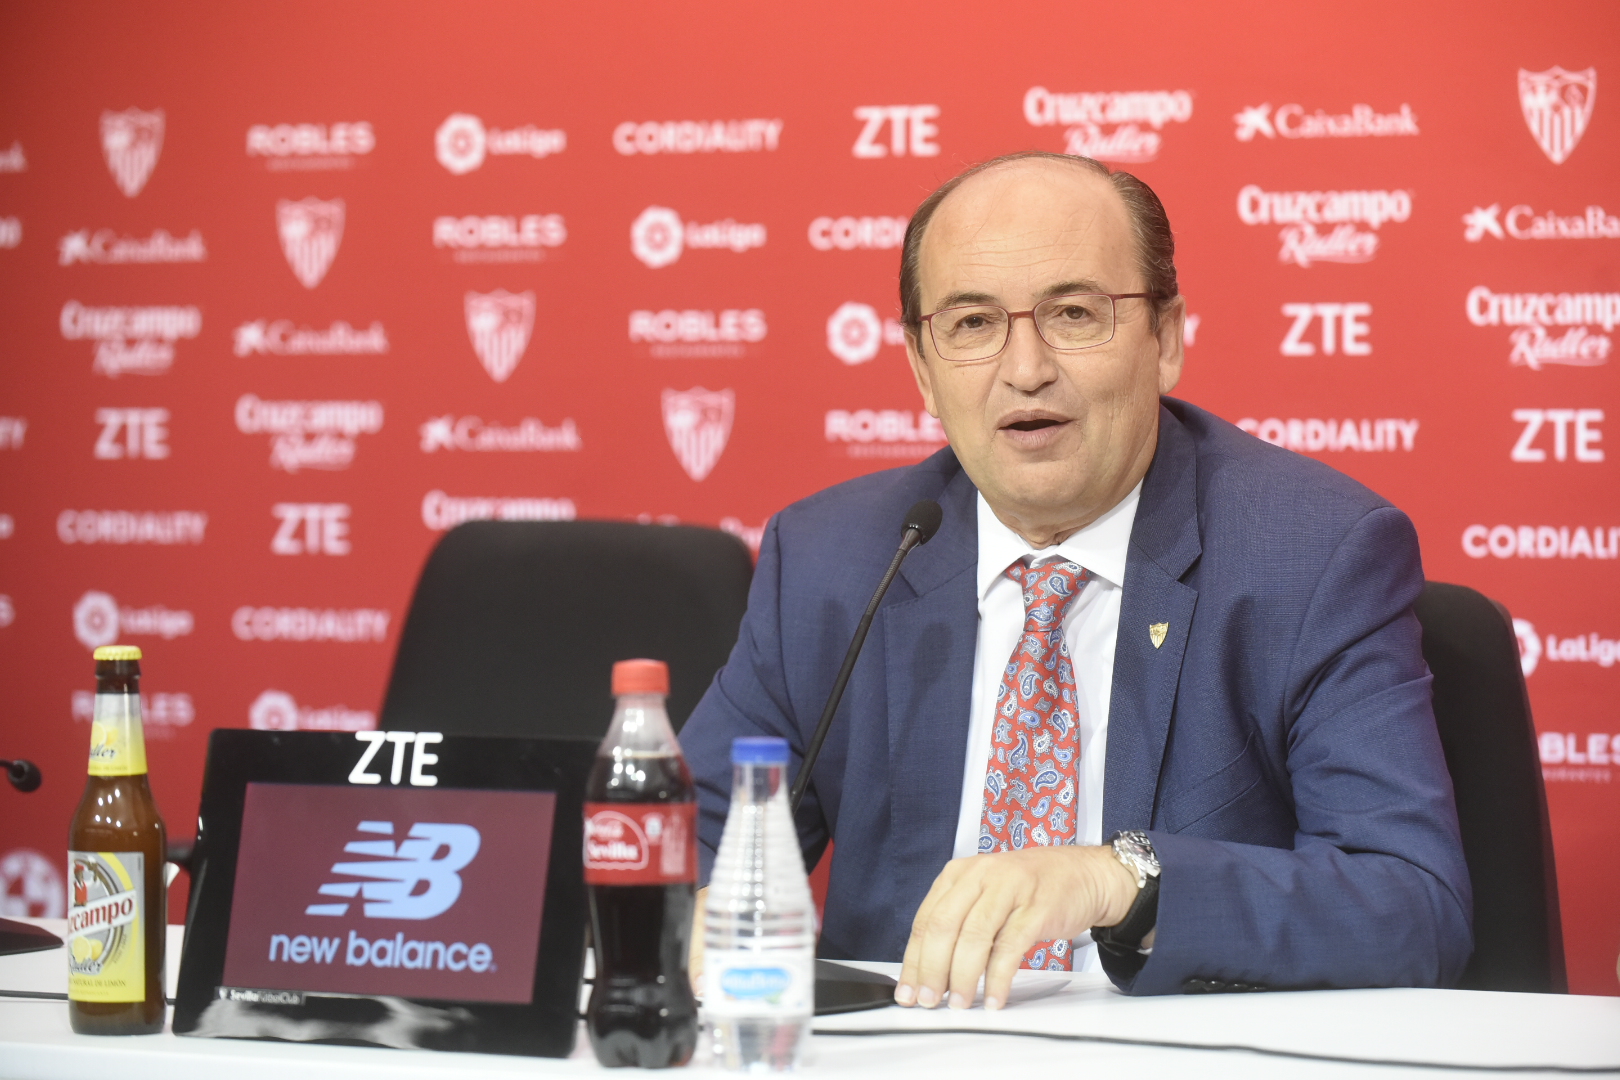 El presidente del Sevilla FC José Castro